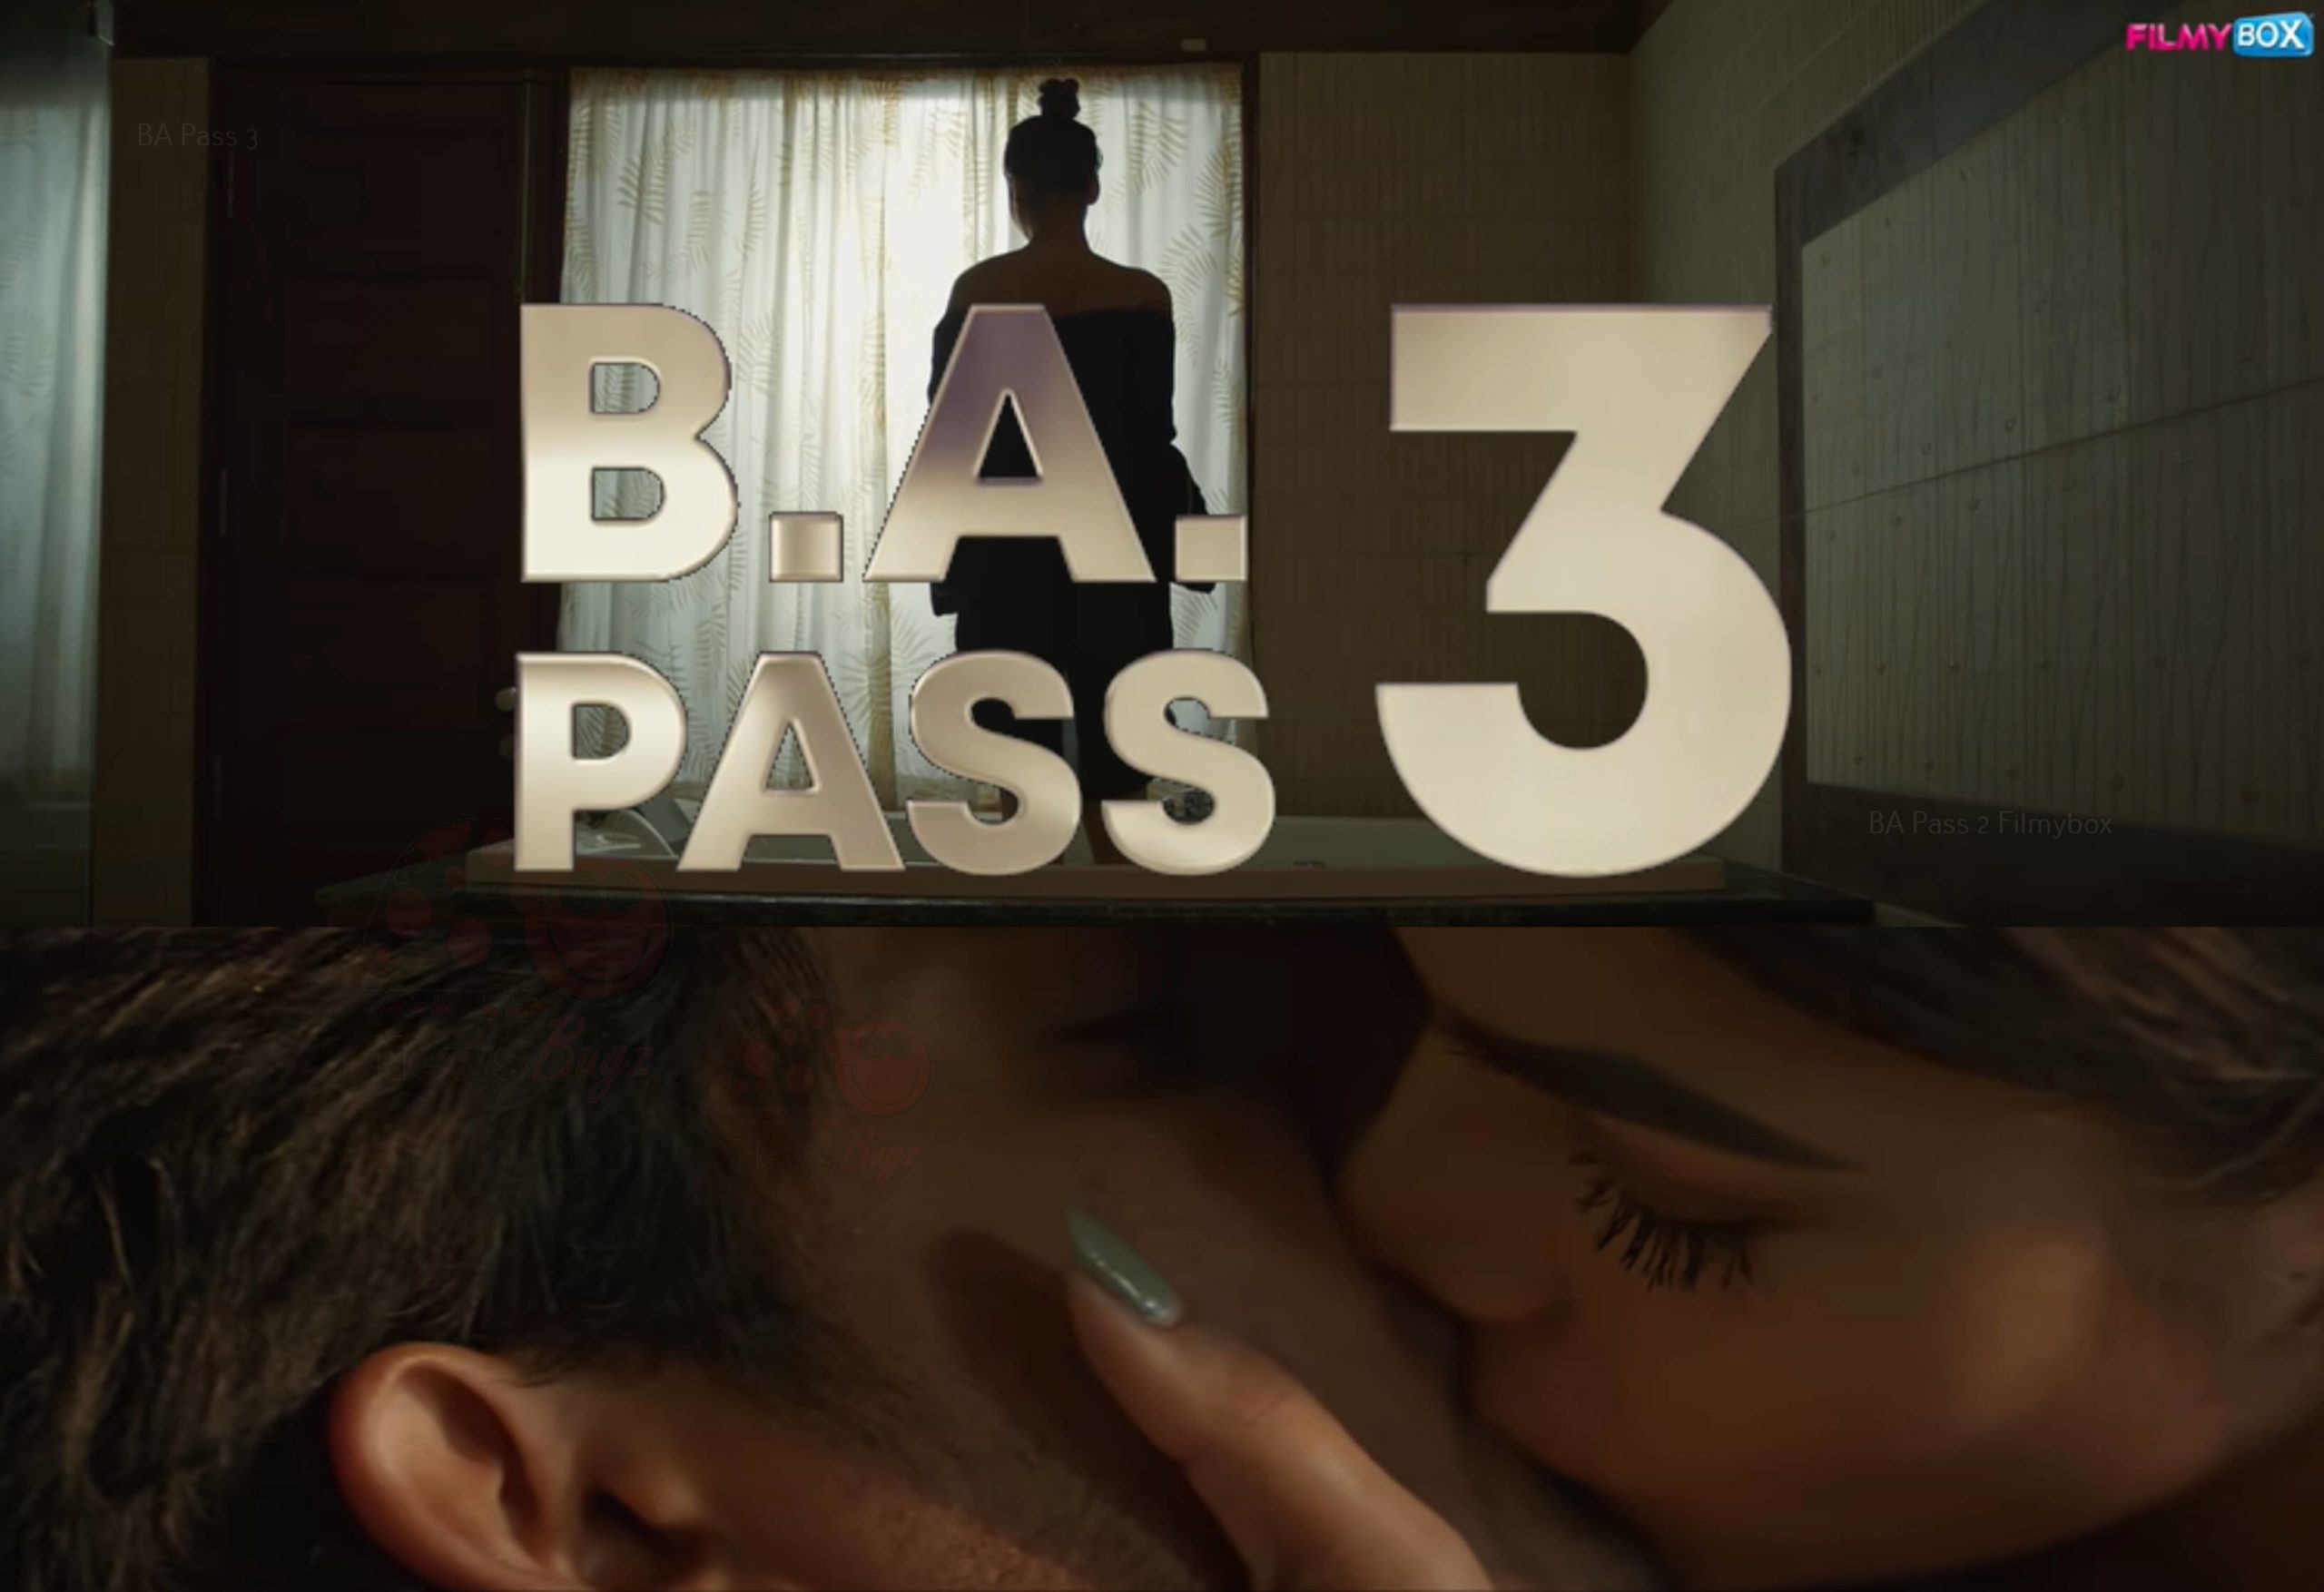 BA Pass 3 Release Date